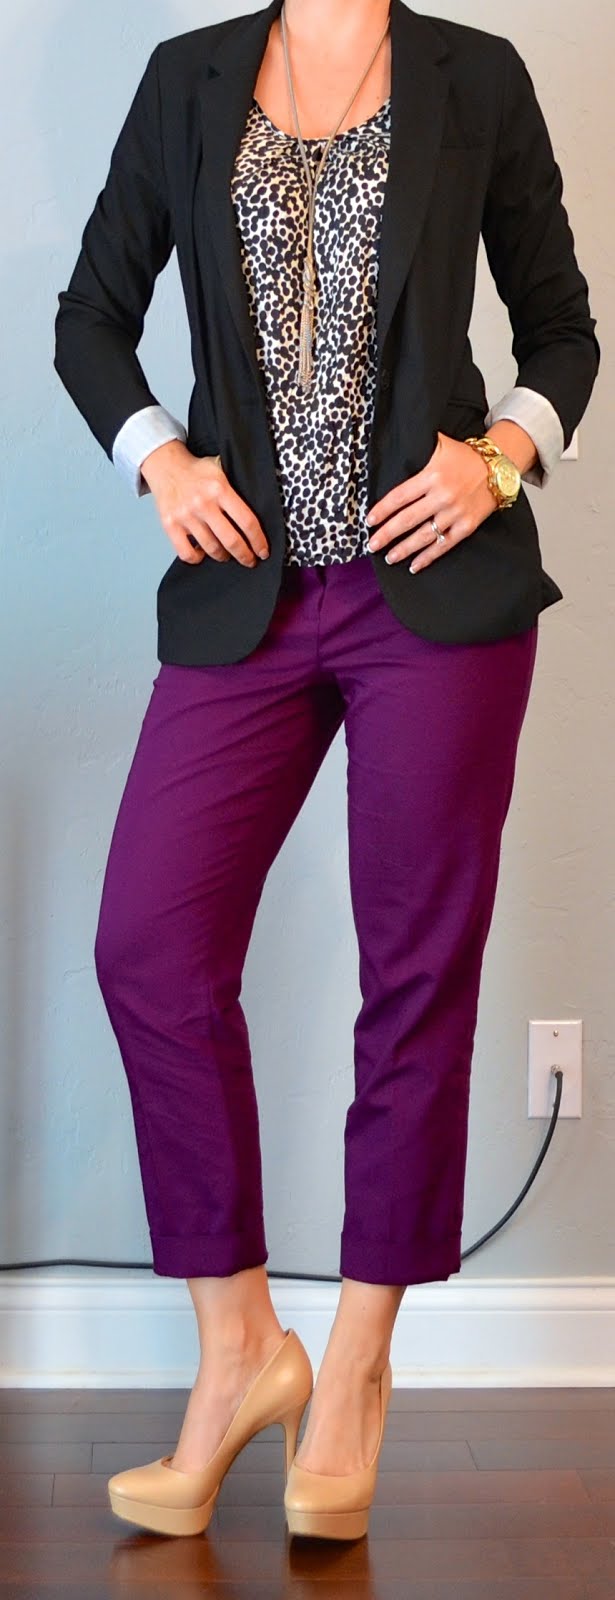 outfit post: black blazer, polkadot blouse, purple cropped pant